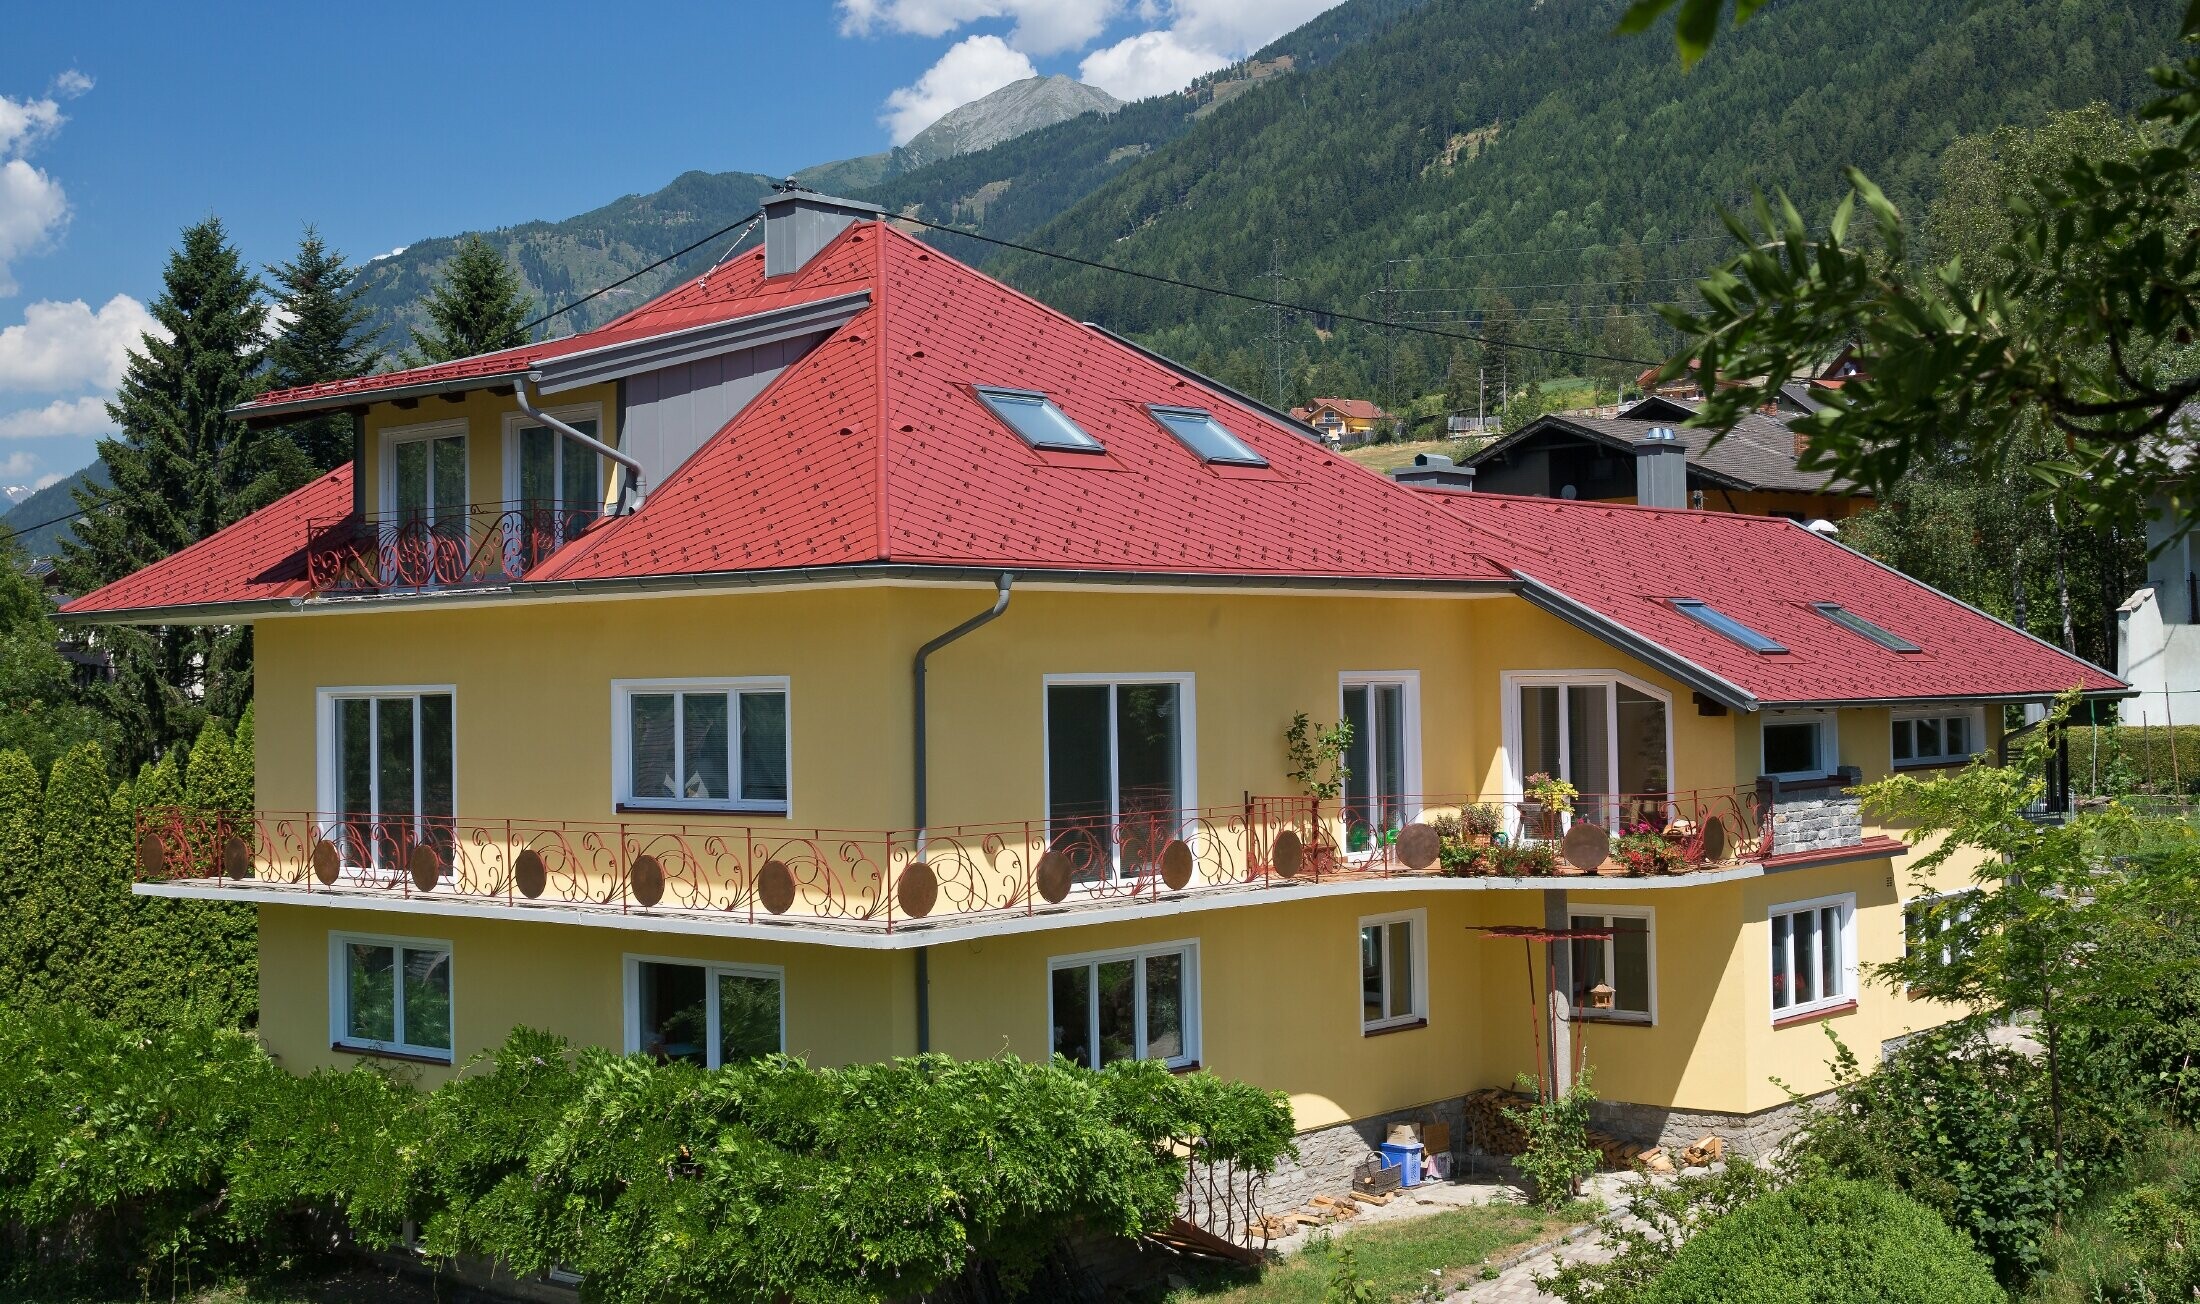 klasyczny dom jednorodzinny z dachem czterospadowym, pokryty dachówką romb w kolorze czerwonym.